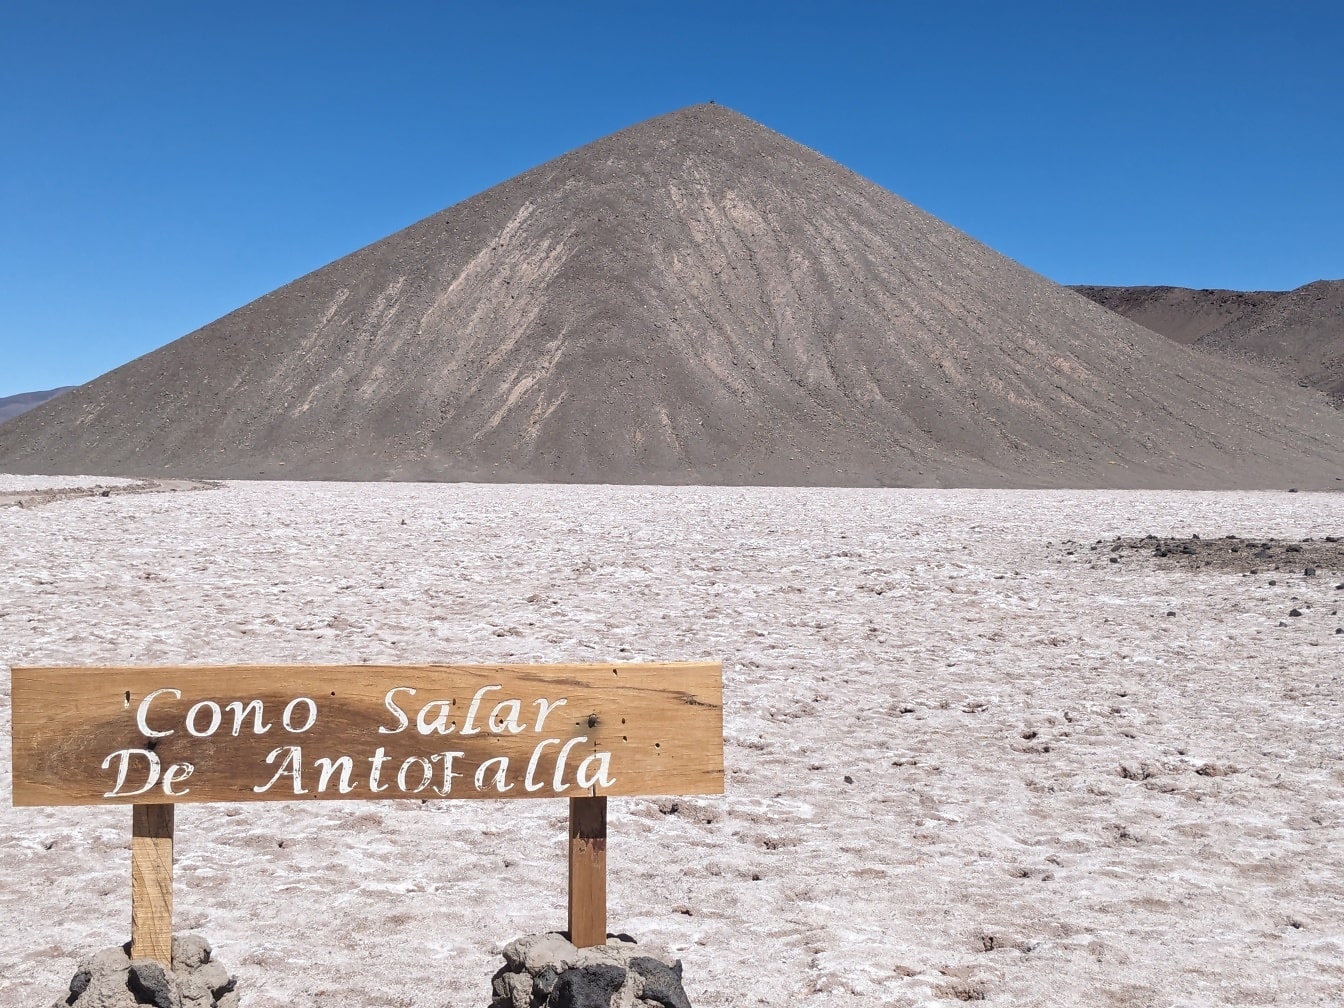 Salar de Antofalla är en saltöken som ligger i Puna de Atacama i Argentina